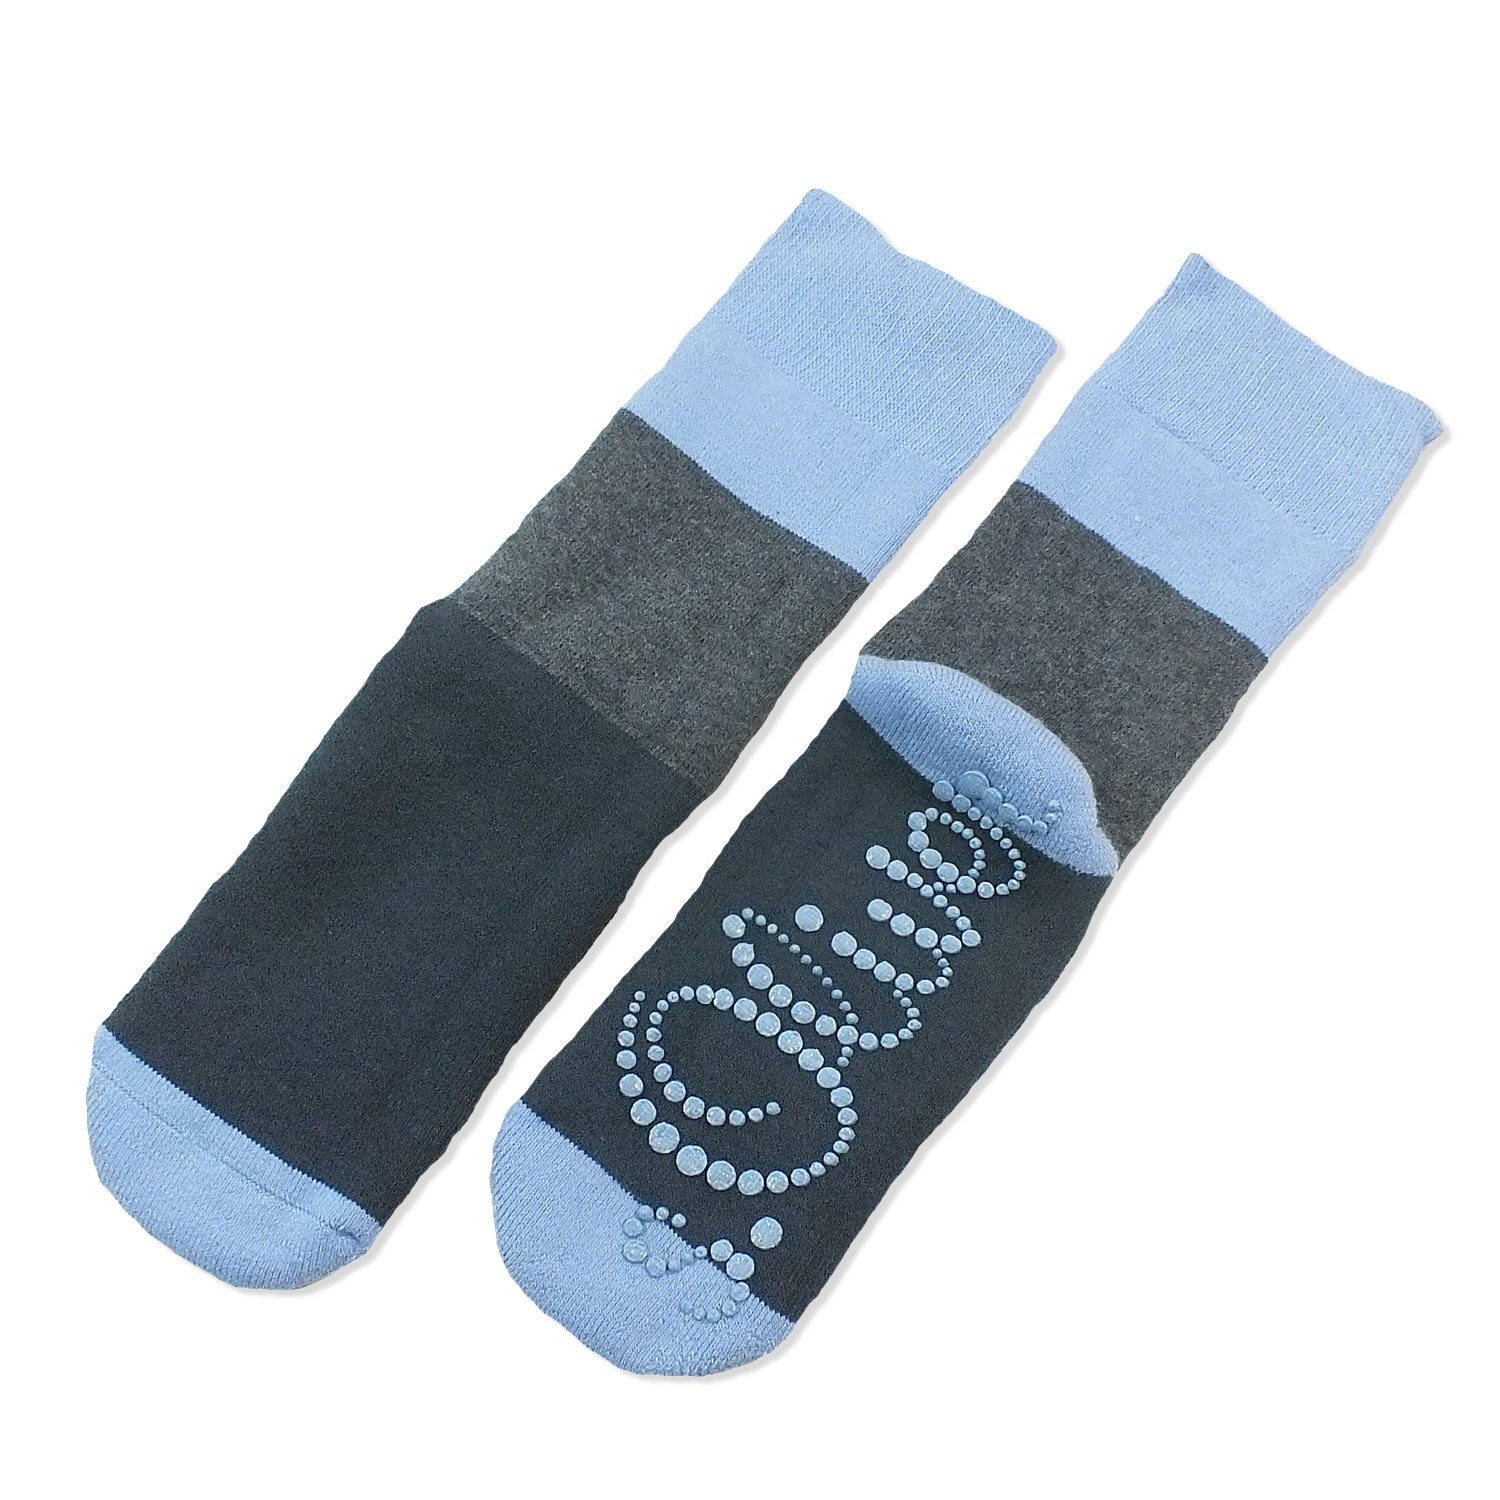 s.Oliver ABS-Socken S20203 (Packung, 1-Paar, 1 Paar) Kinder Socken Jungen Mädchen Baumwolle Kindersocken mit ABS-Noppen 30 blue comb